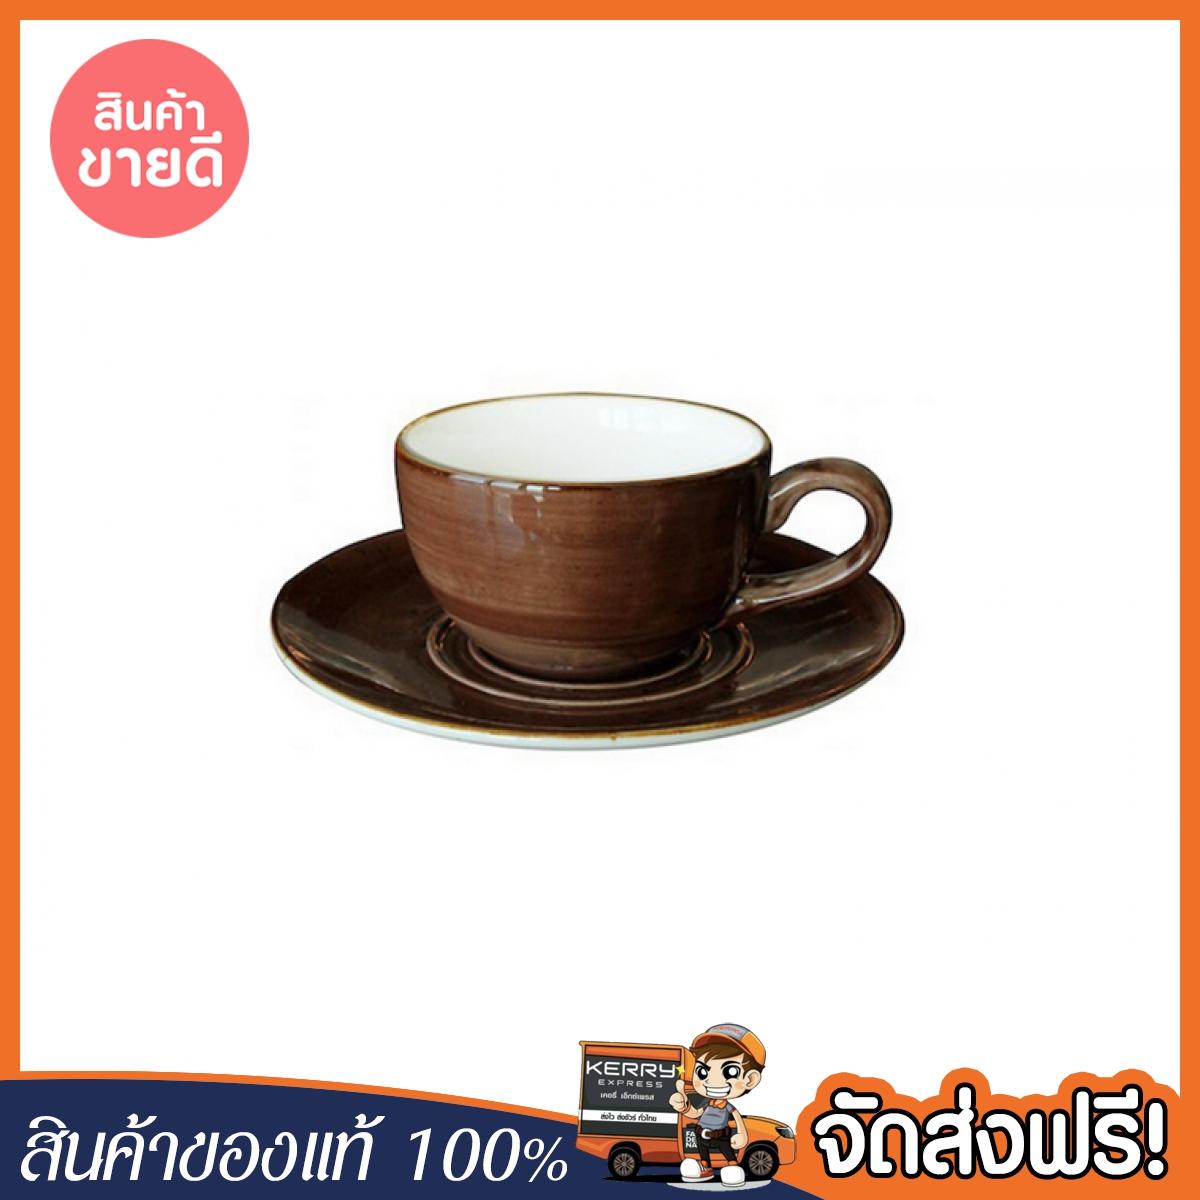 [ของแท้ ส่งฟรี] COFFEE SET CERAMIC BROWN ชุดถ้วยกาแฟ 200ml NOBILE NOBULA น้ำตาล ของแท้ โปรโมชั่นพิเศษ สินค้าพร้อมจัดส่ง